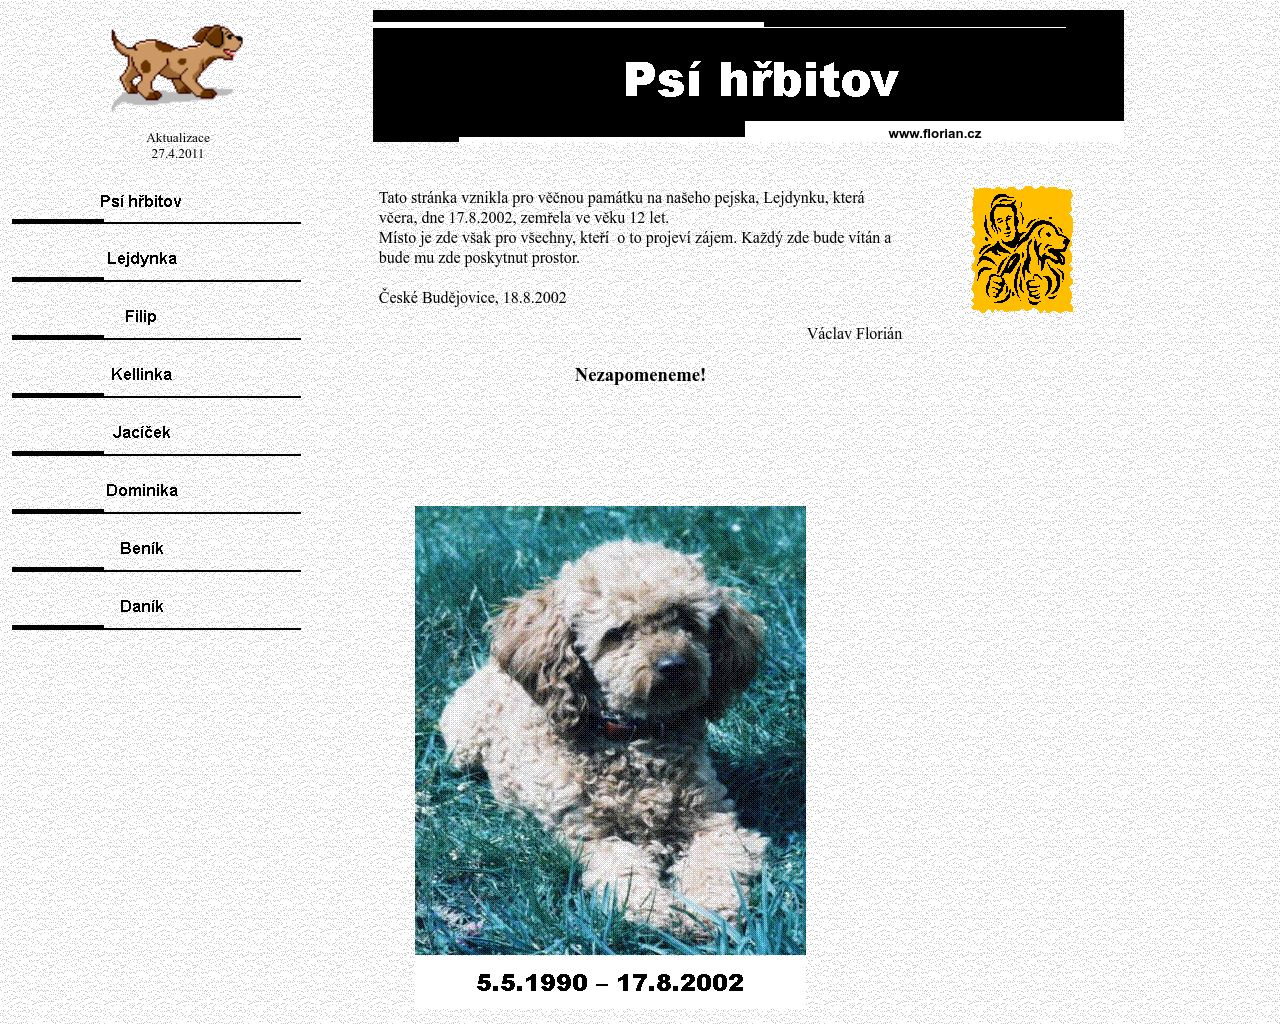 Site Image psihrbitov.cz v 1280x1024